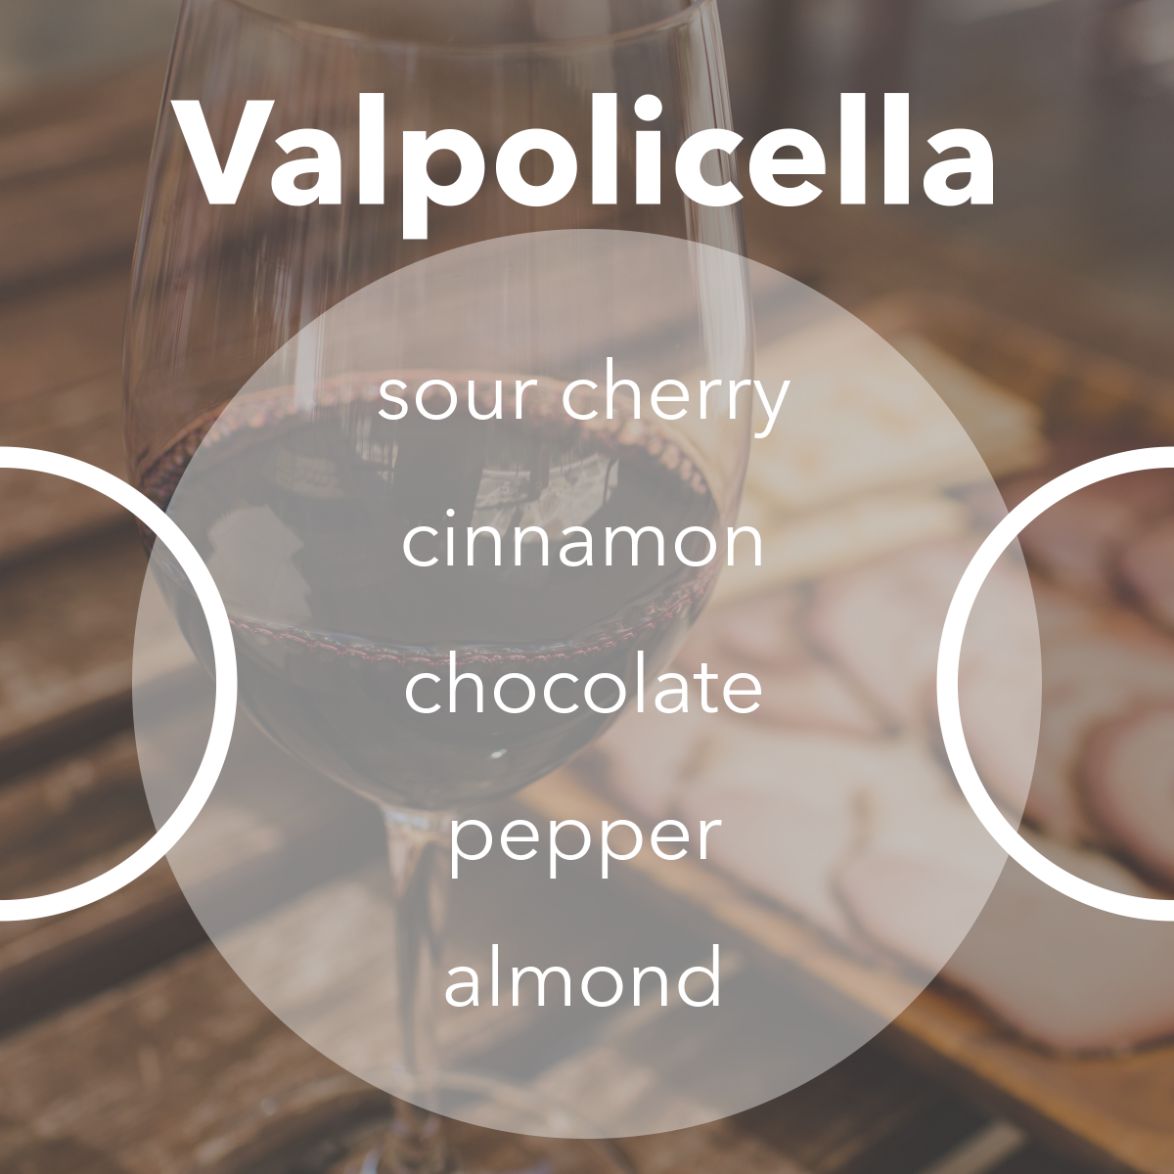 Valpolicella wine tasting notes.